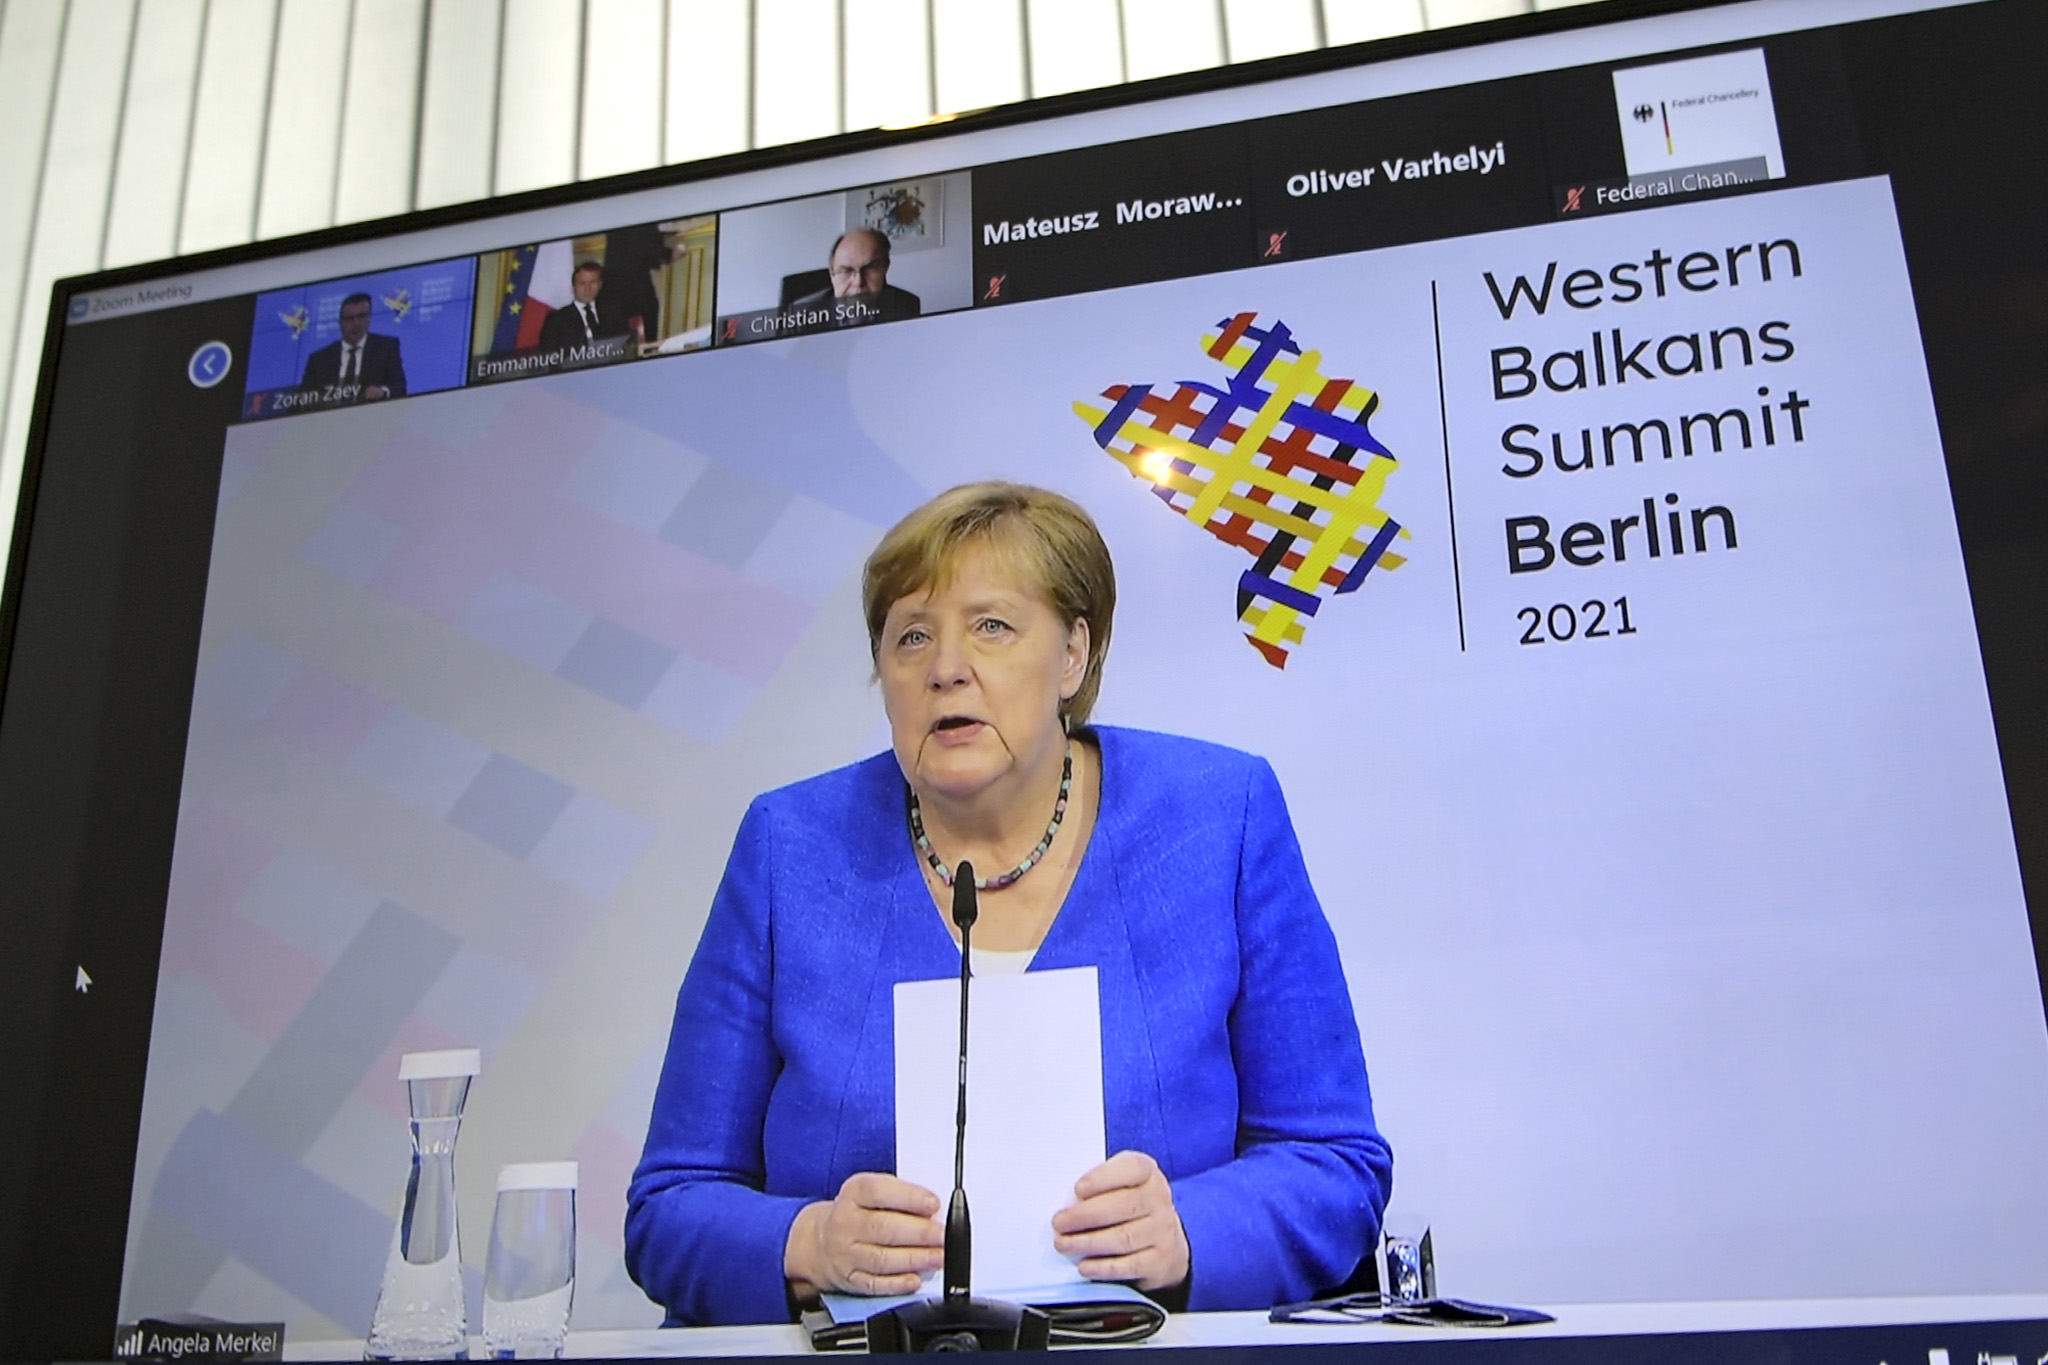  Çfarë tha Angela Merkel në takimin e fundit me liderët e Ballkanit